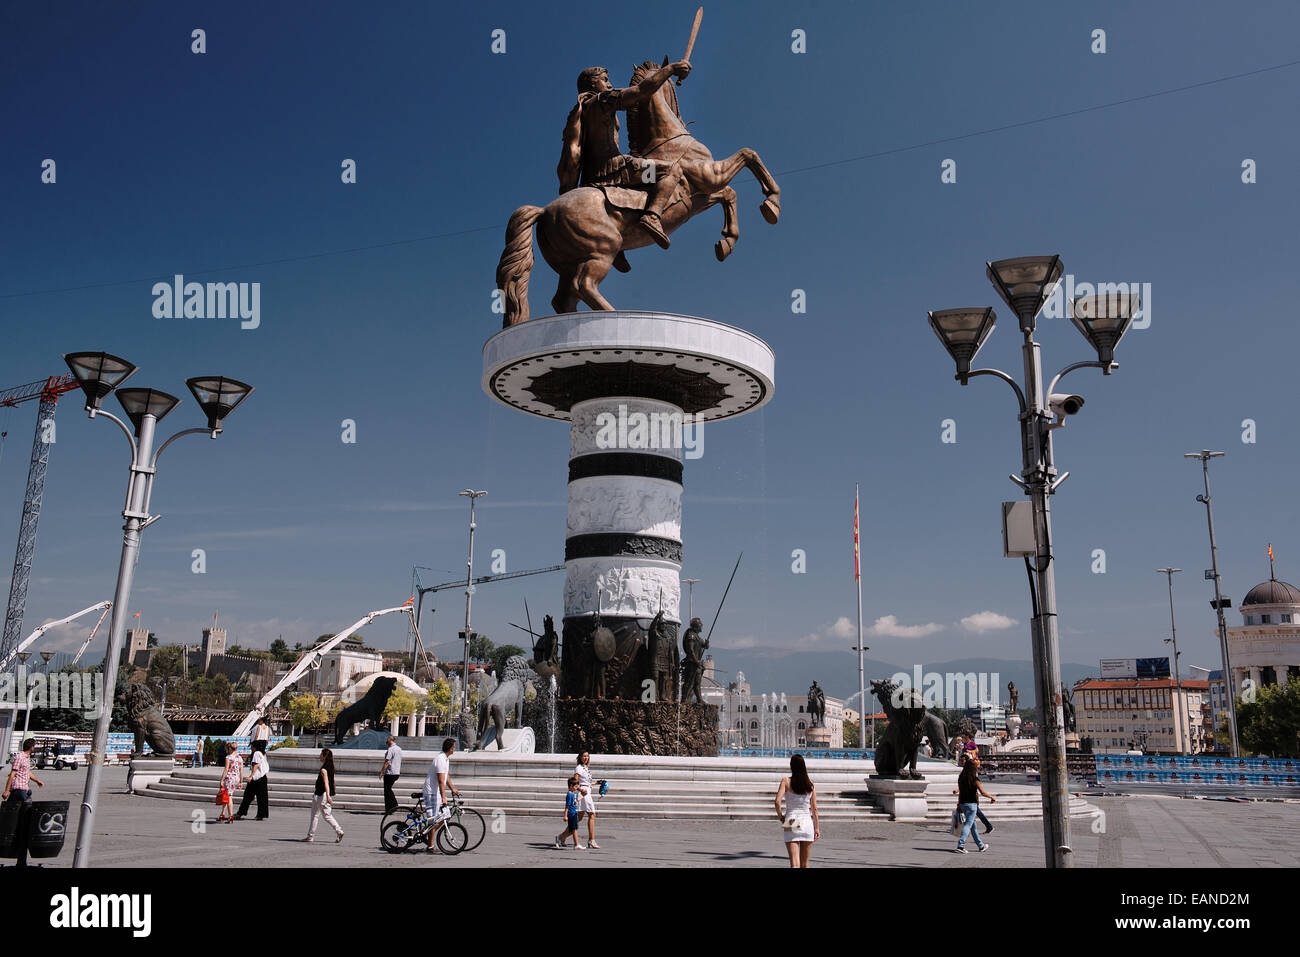 Der Krieger auf ein Pferd Statue, in der Regel dachte, Alexander der große darzustellen ist das wichtigste Symbol der Stadt Skopje Stockfoto